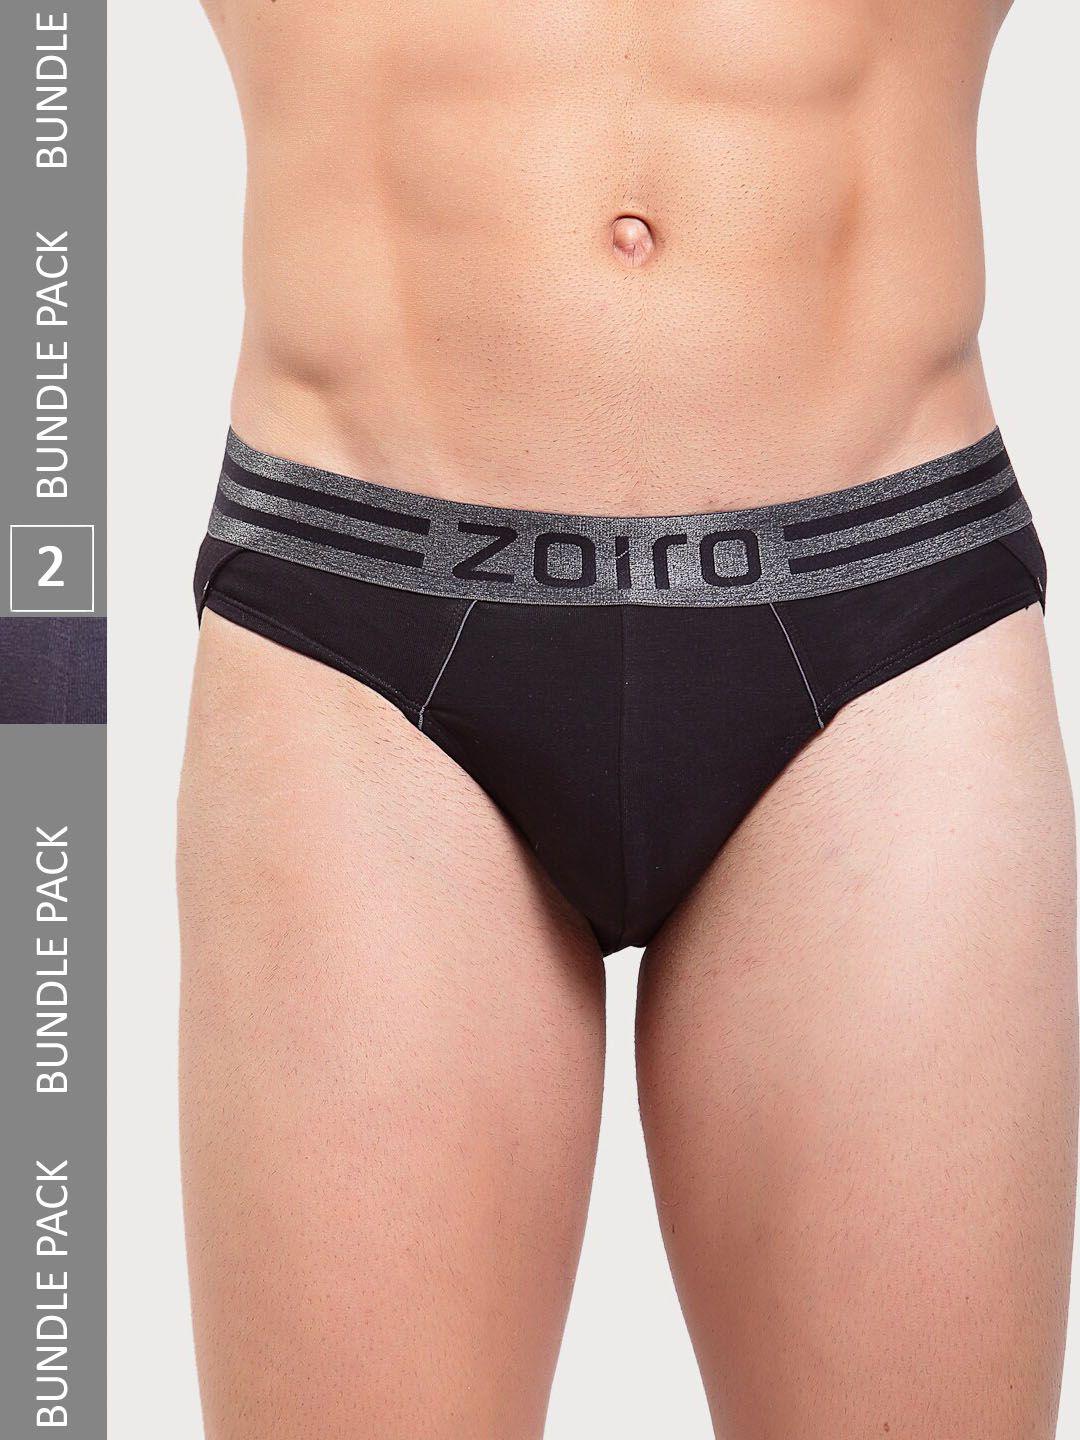 zoiro men pack of 2 basic briefs sports brief-513